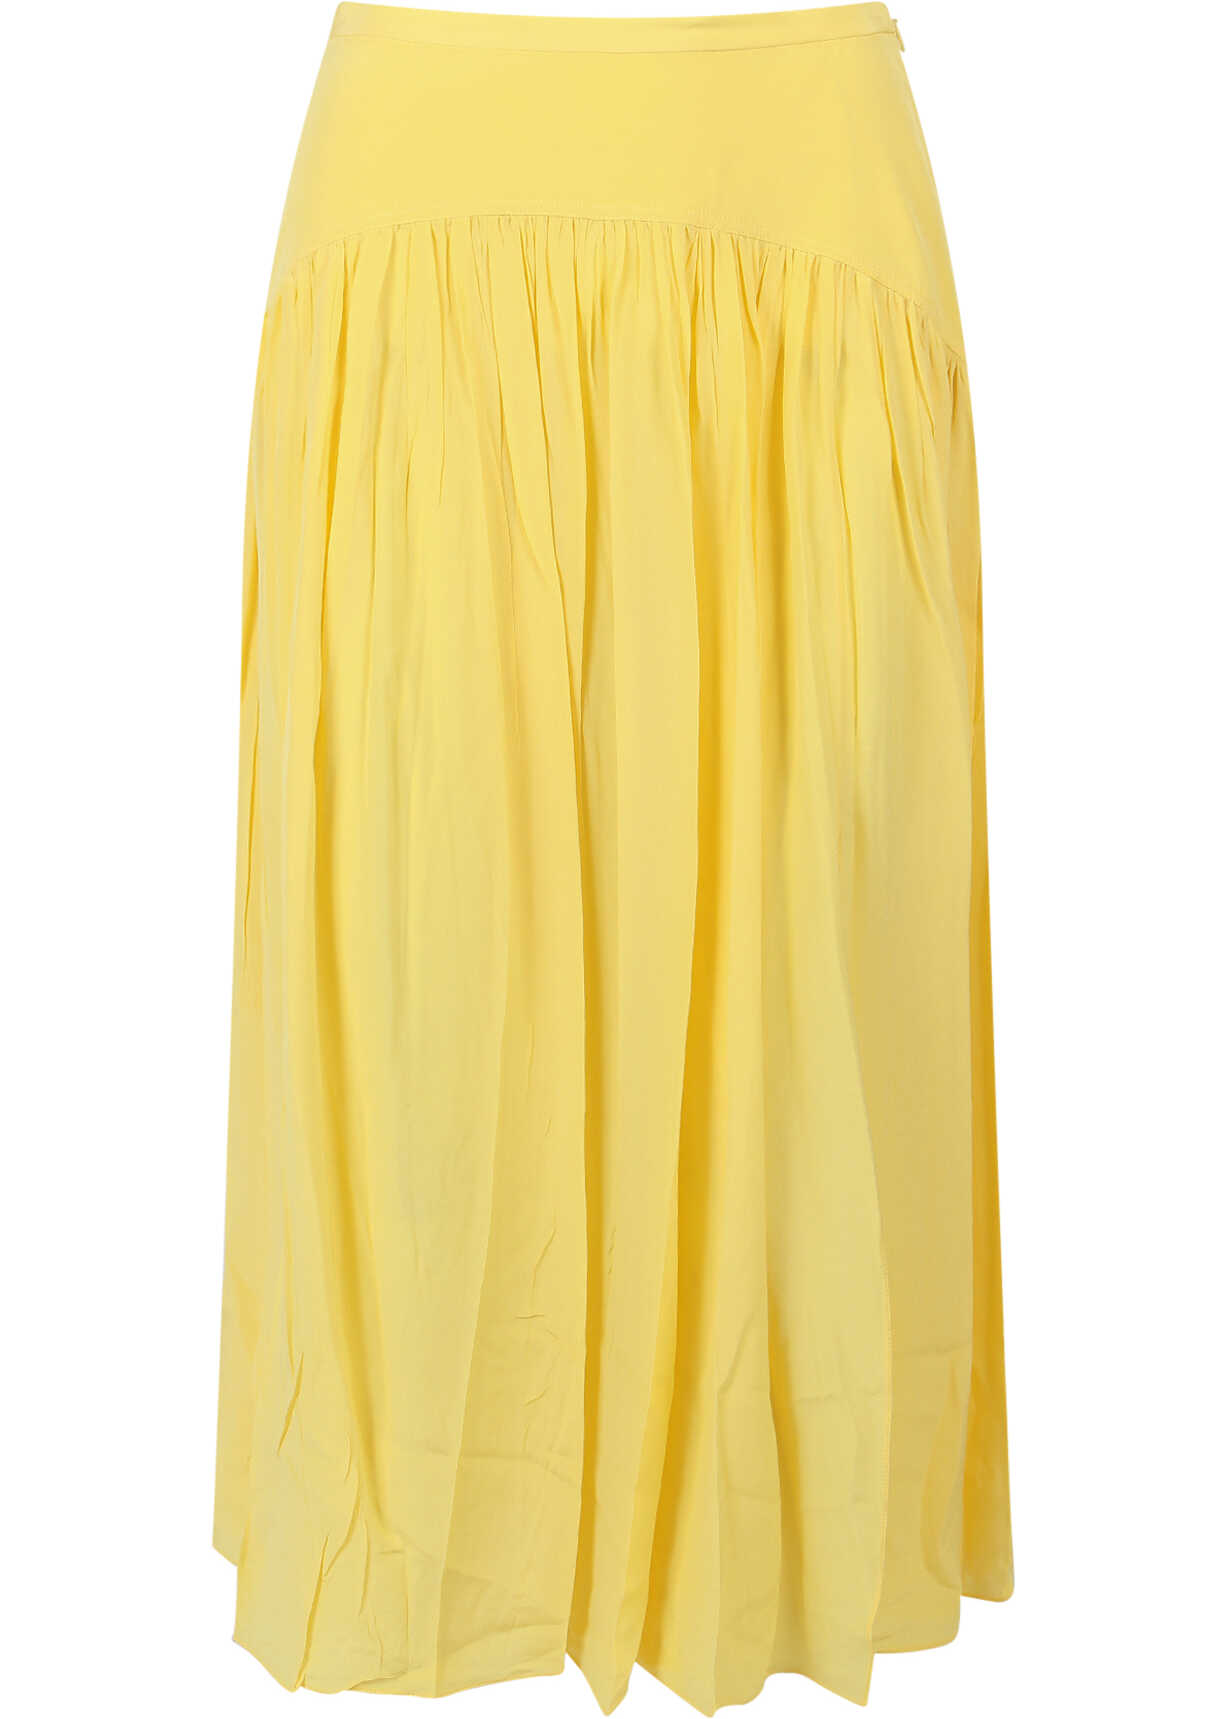 Poze Marni Skirt Yellow b-mall.ro 